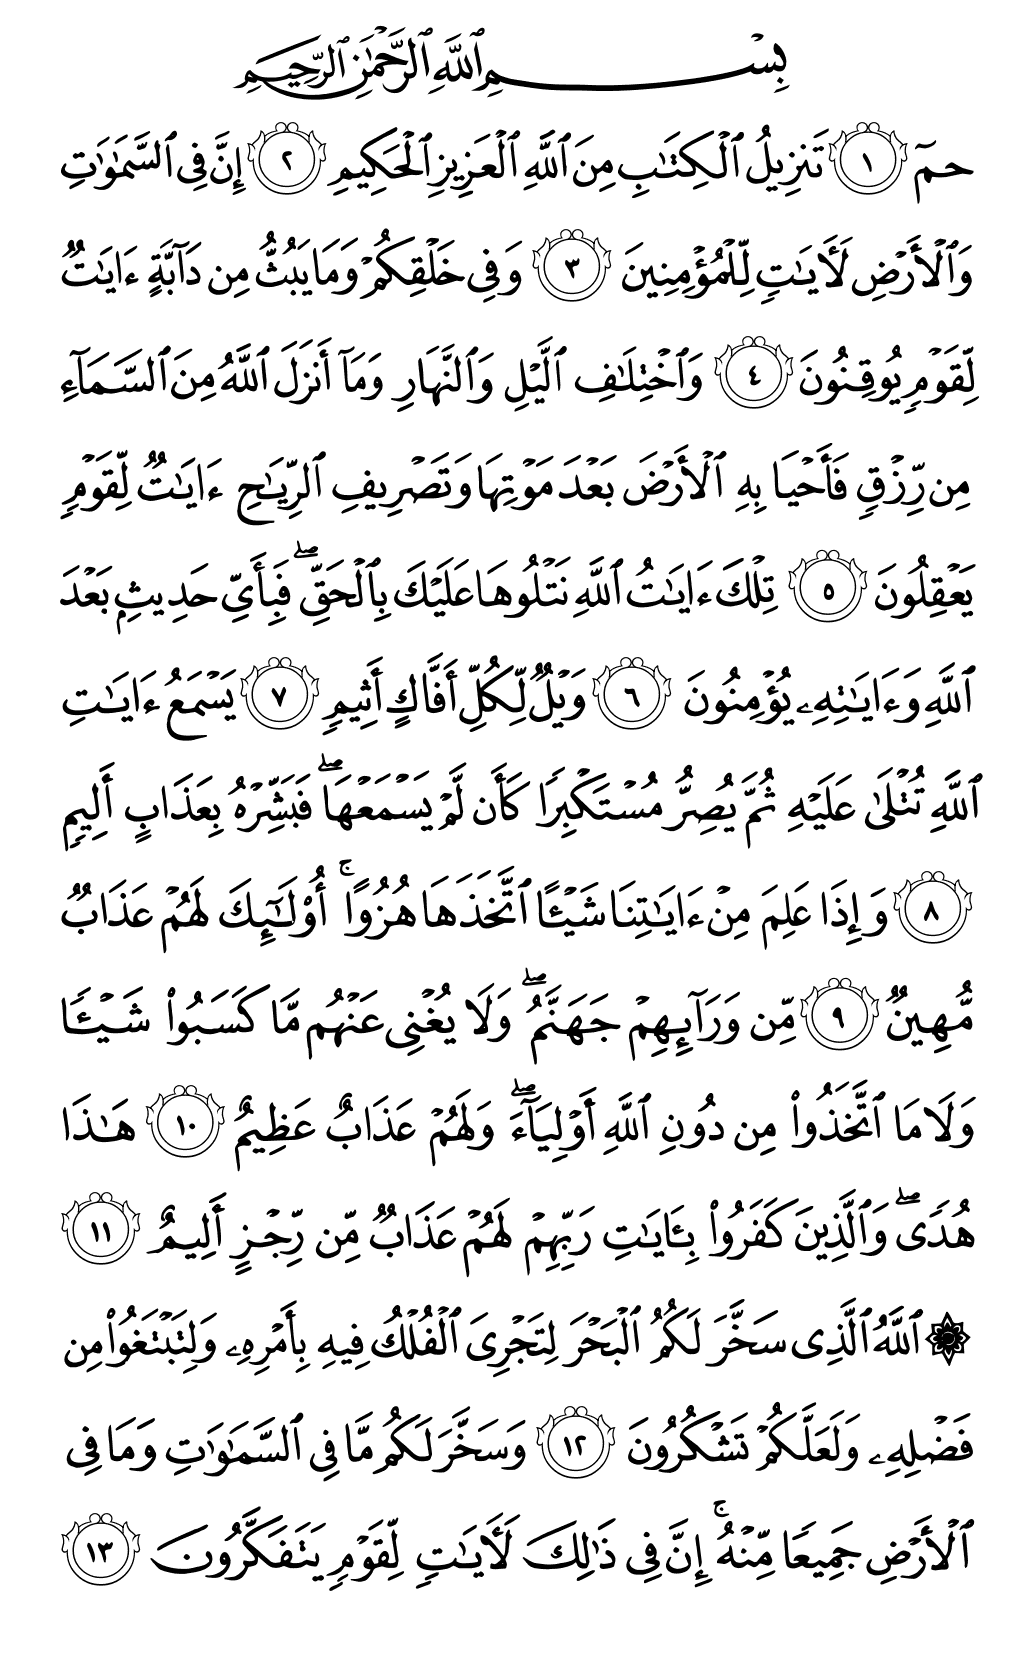 الصفحة رقم 499 من القرآن الكريم